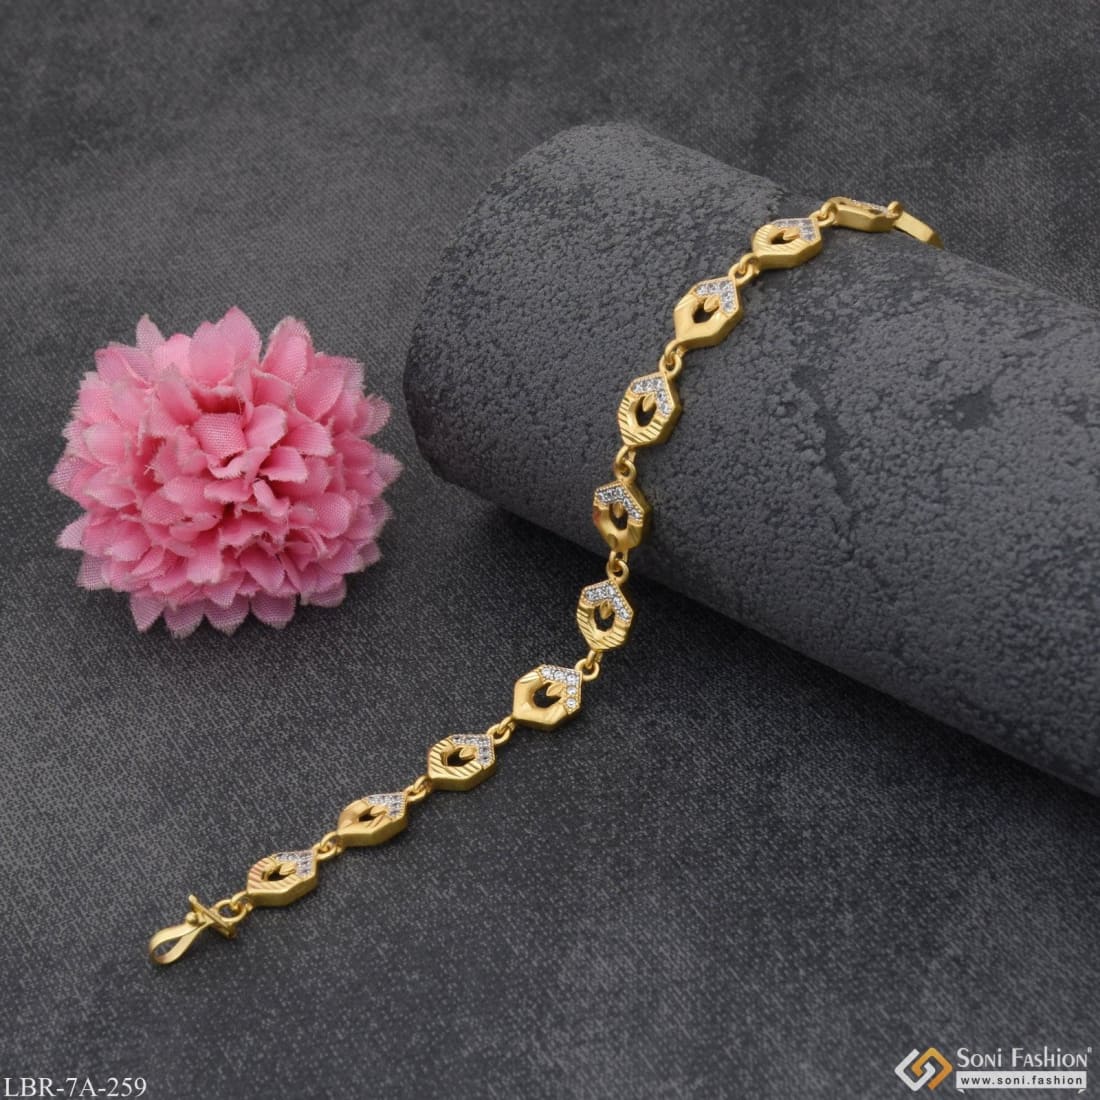 Buy American Diamond Rose Gold Bracelet Best Gift for Female